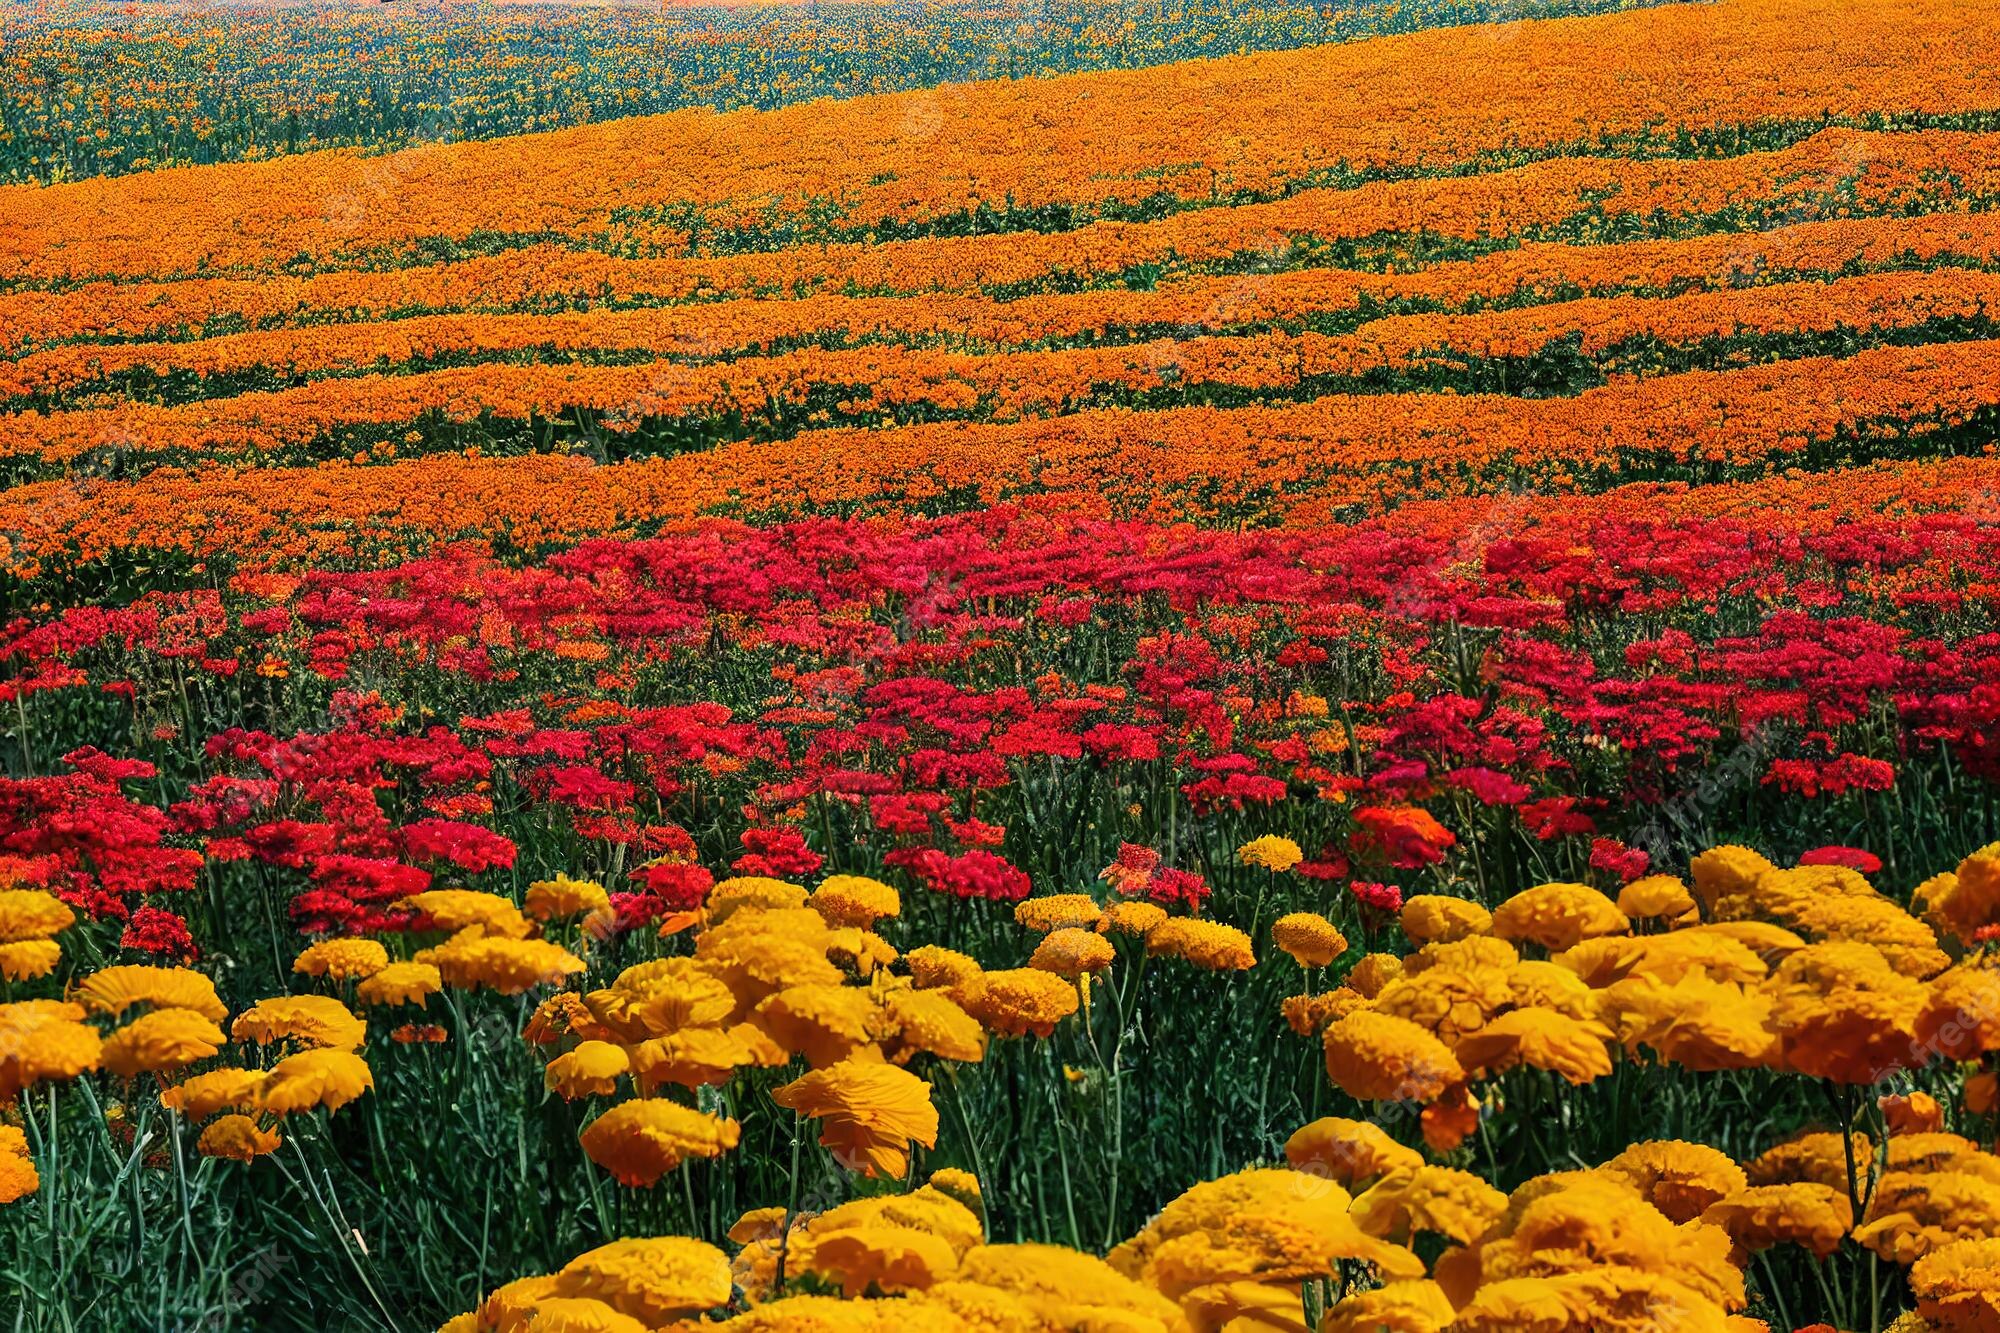 Premium Photo. Summer flower bouquet of yellow red orange flowers in field